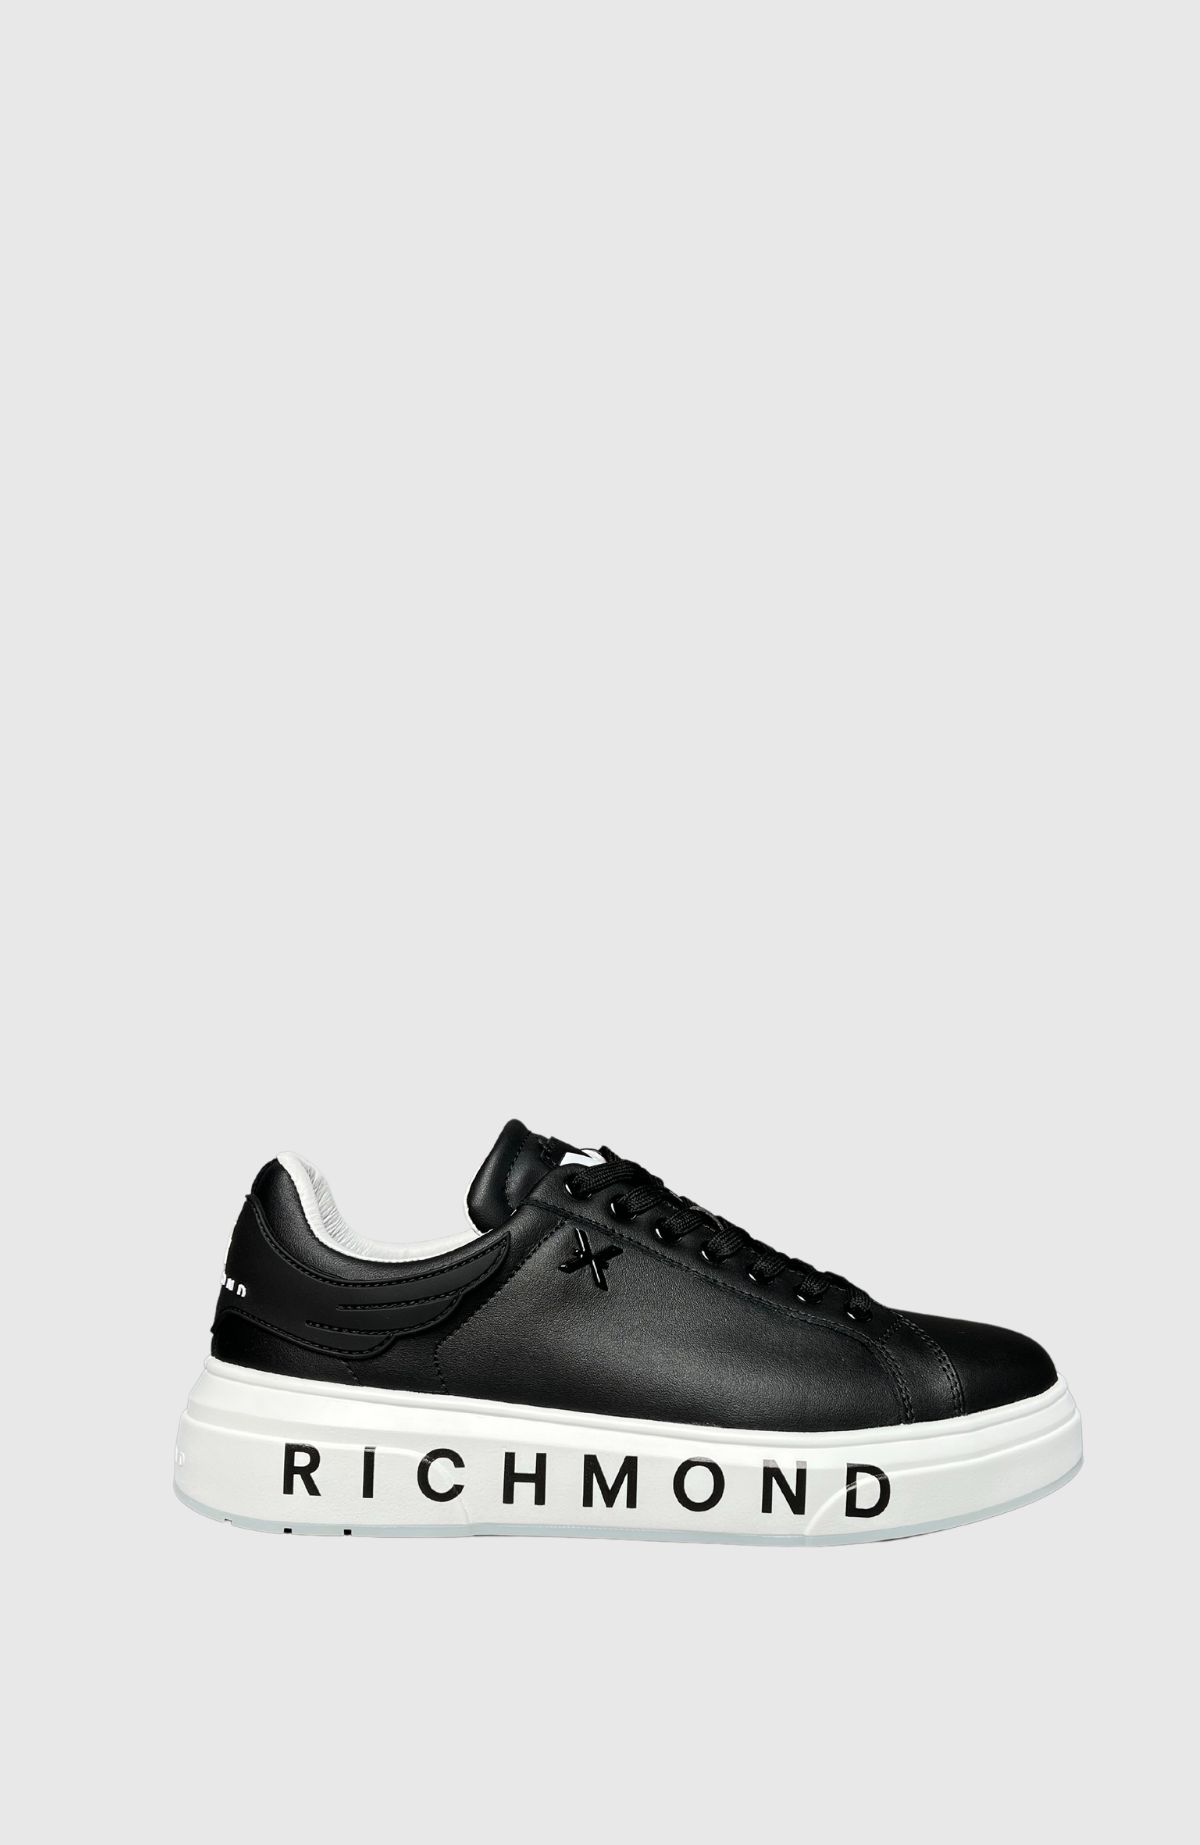 John Richmond Sneakers